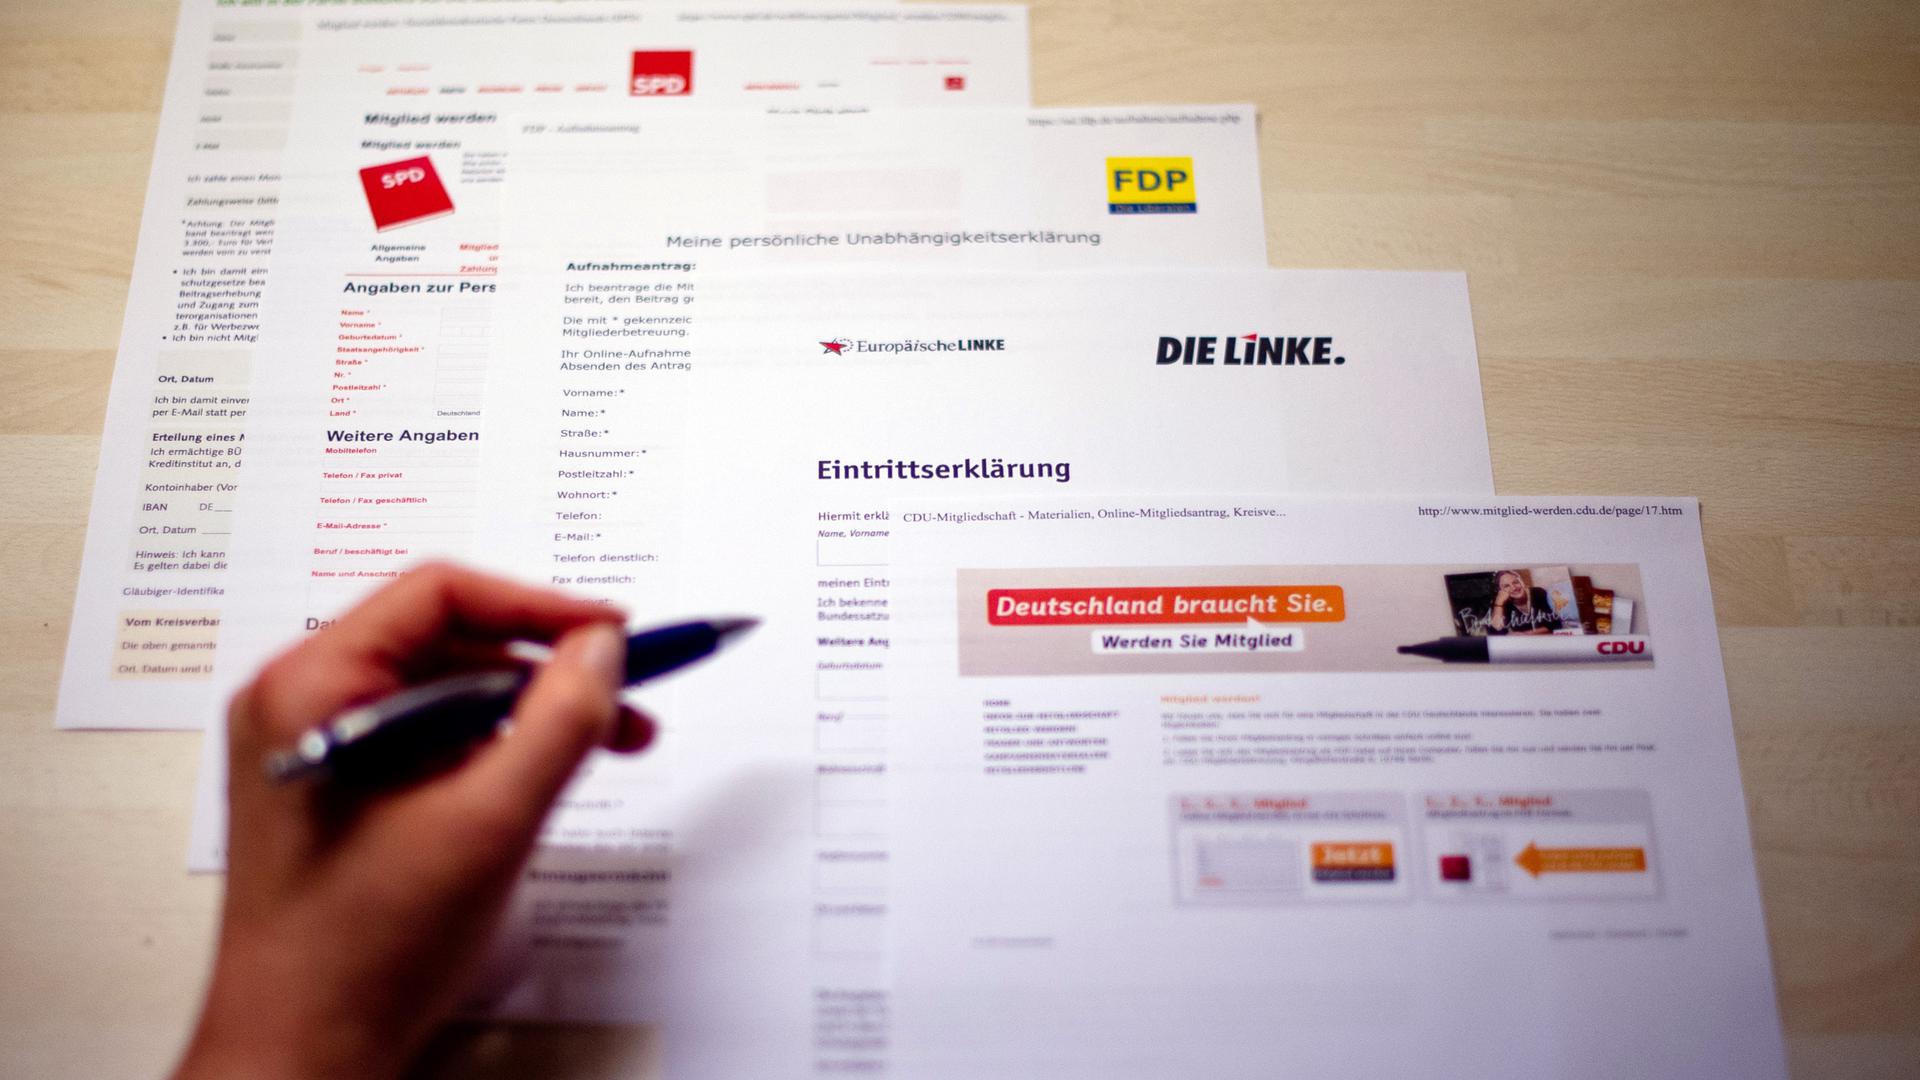 Online-Eintrittserklärungen und Aufnahmeanträge der Parteien Bündnis 90/Die Grünen, SPD, FDP, Die Linke und CDU liegen auf einem Tisch.